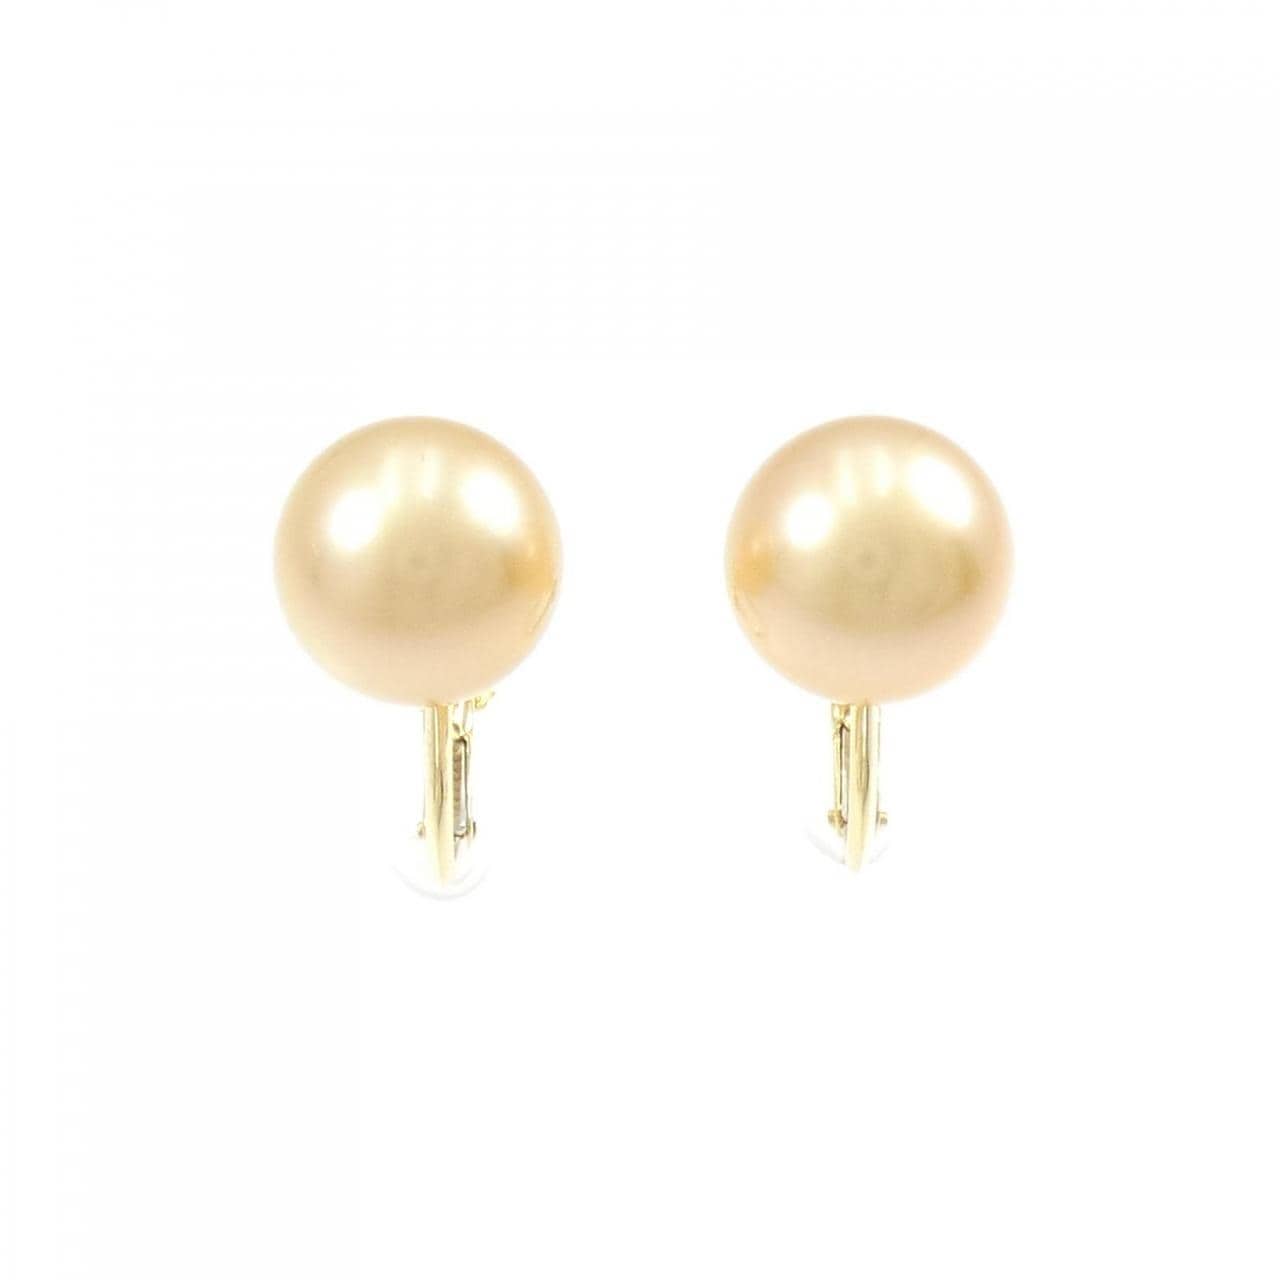 Tasaki White Butterfly Pearl earrings 11mm